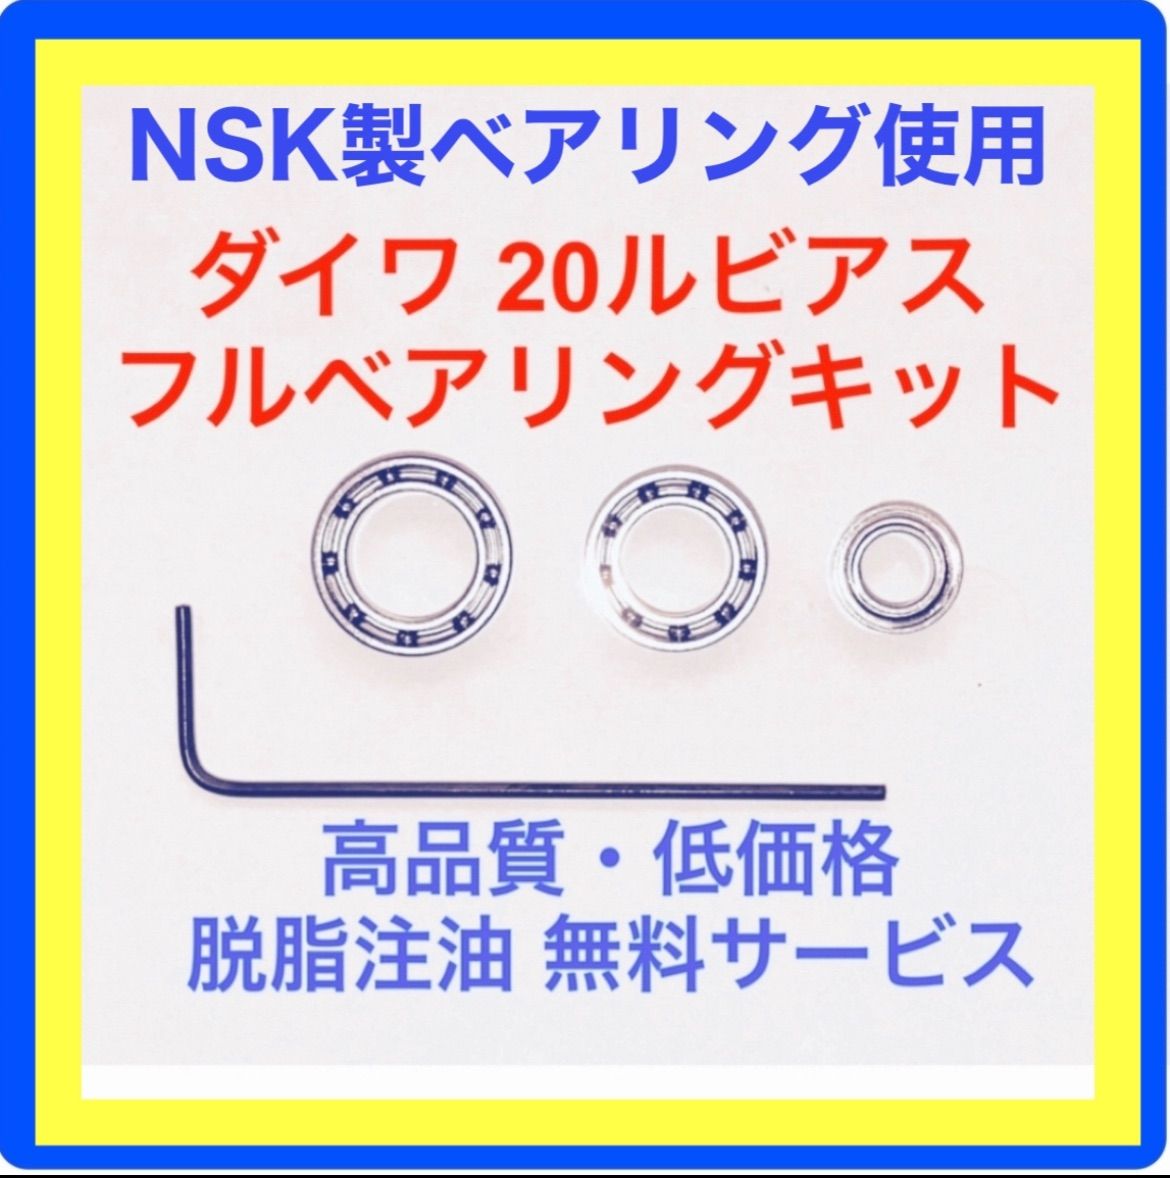 高品質NSK製ダイワ20ルビアス用フルベアリングキット リールカスタムFactory【ペガサス】 メルカリ